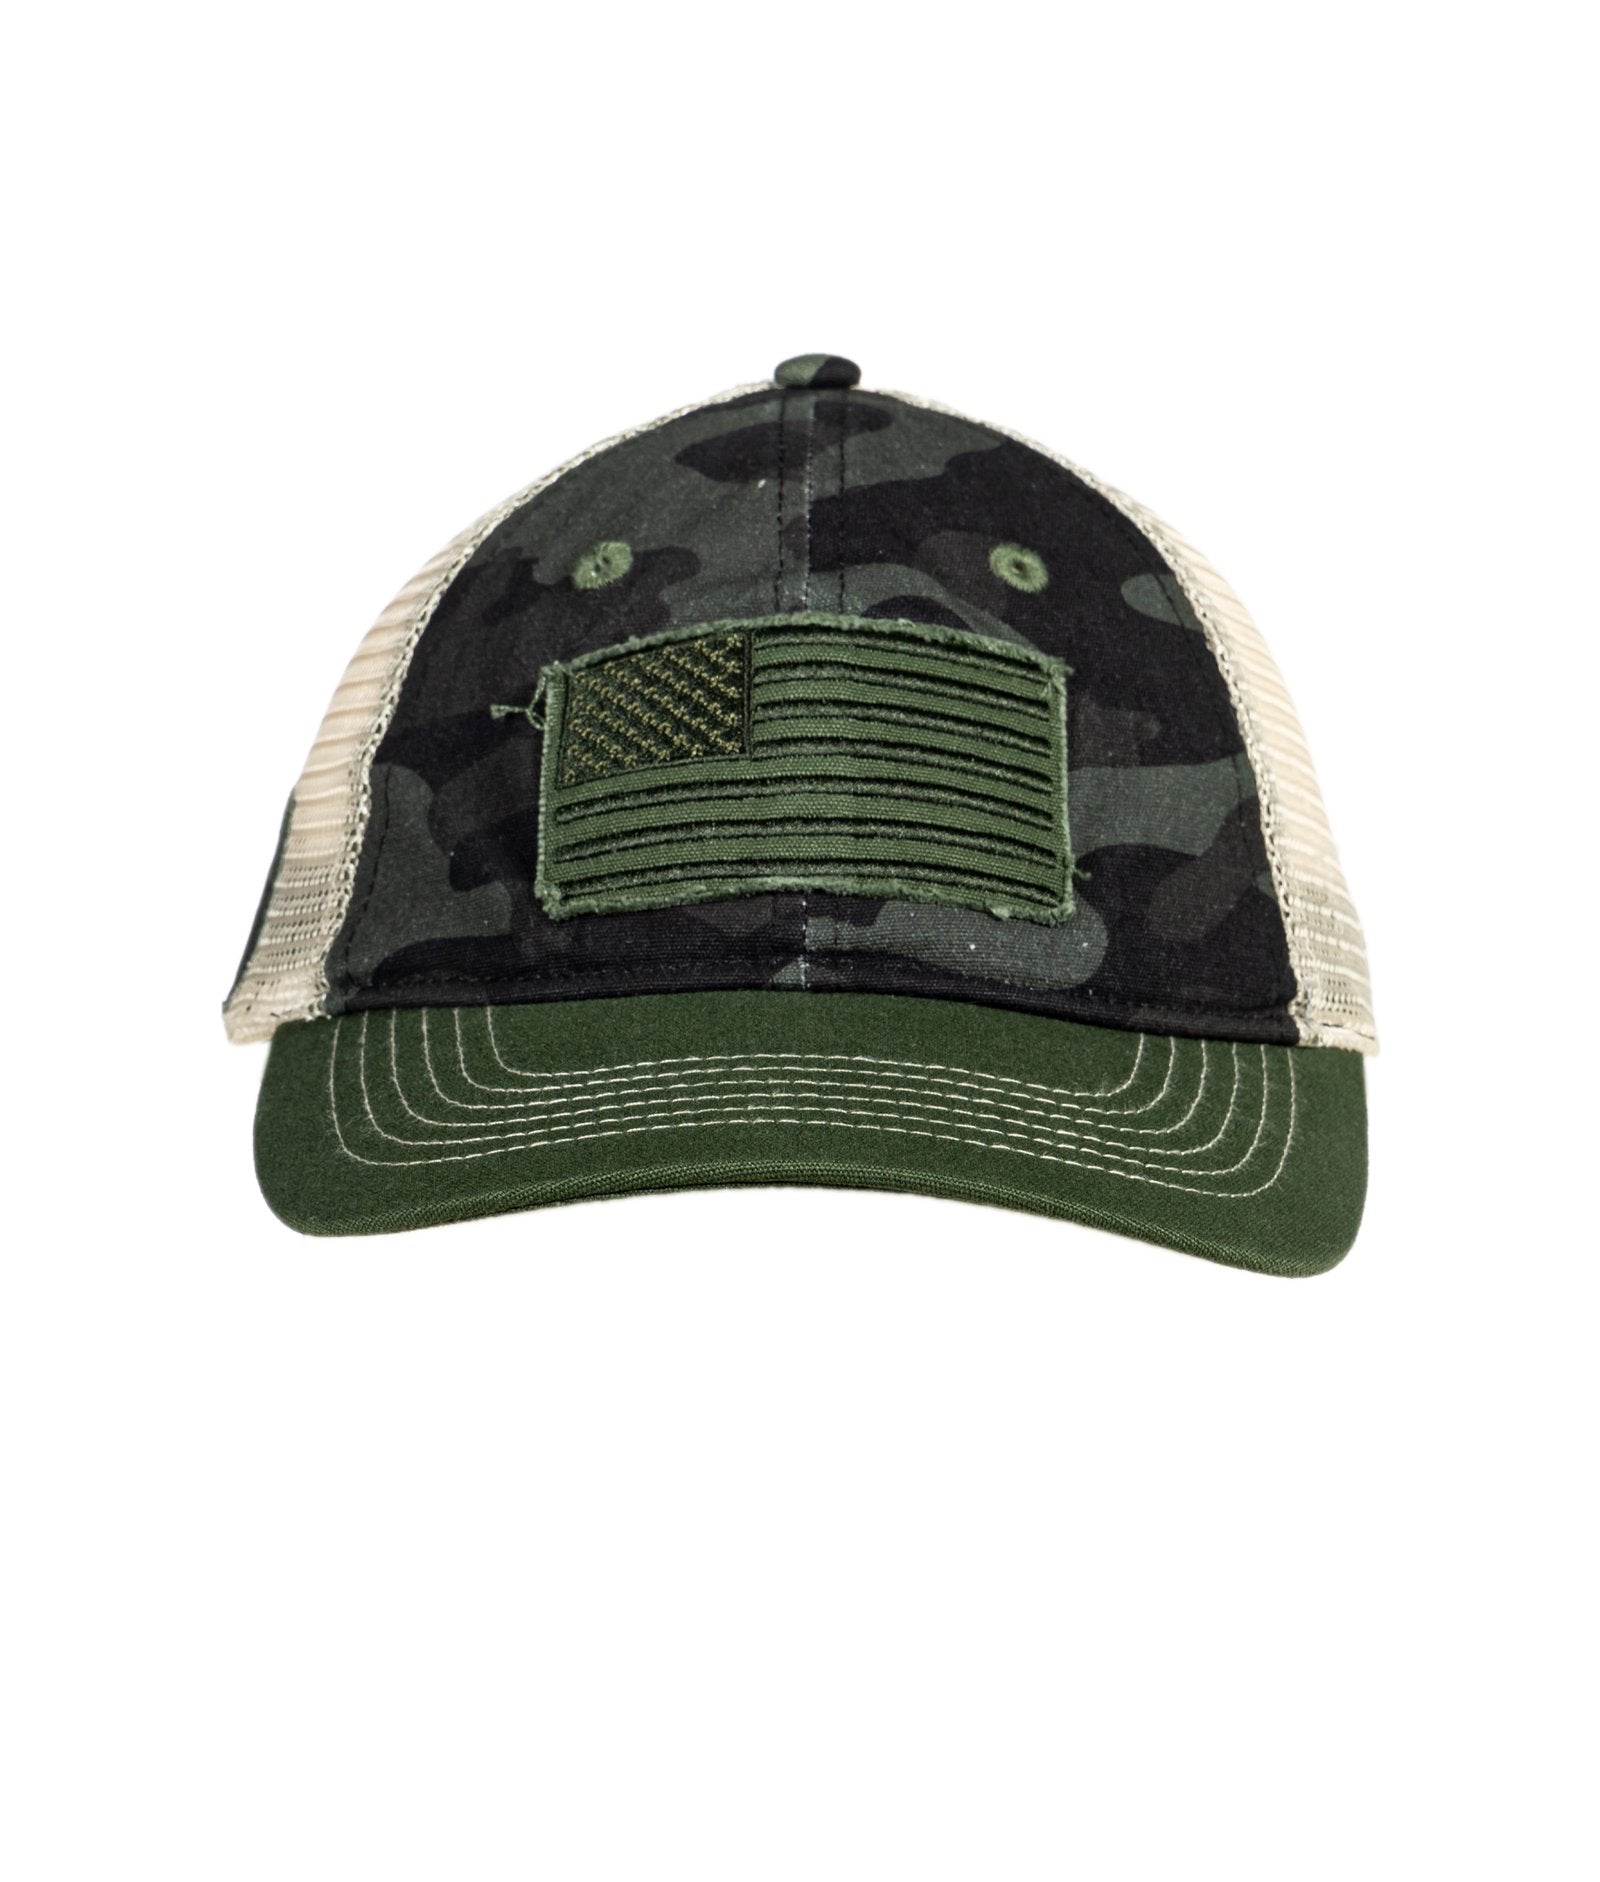 Operation Hat Trick Grove Vintage Snapback Adjustable Hat